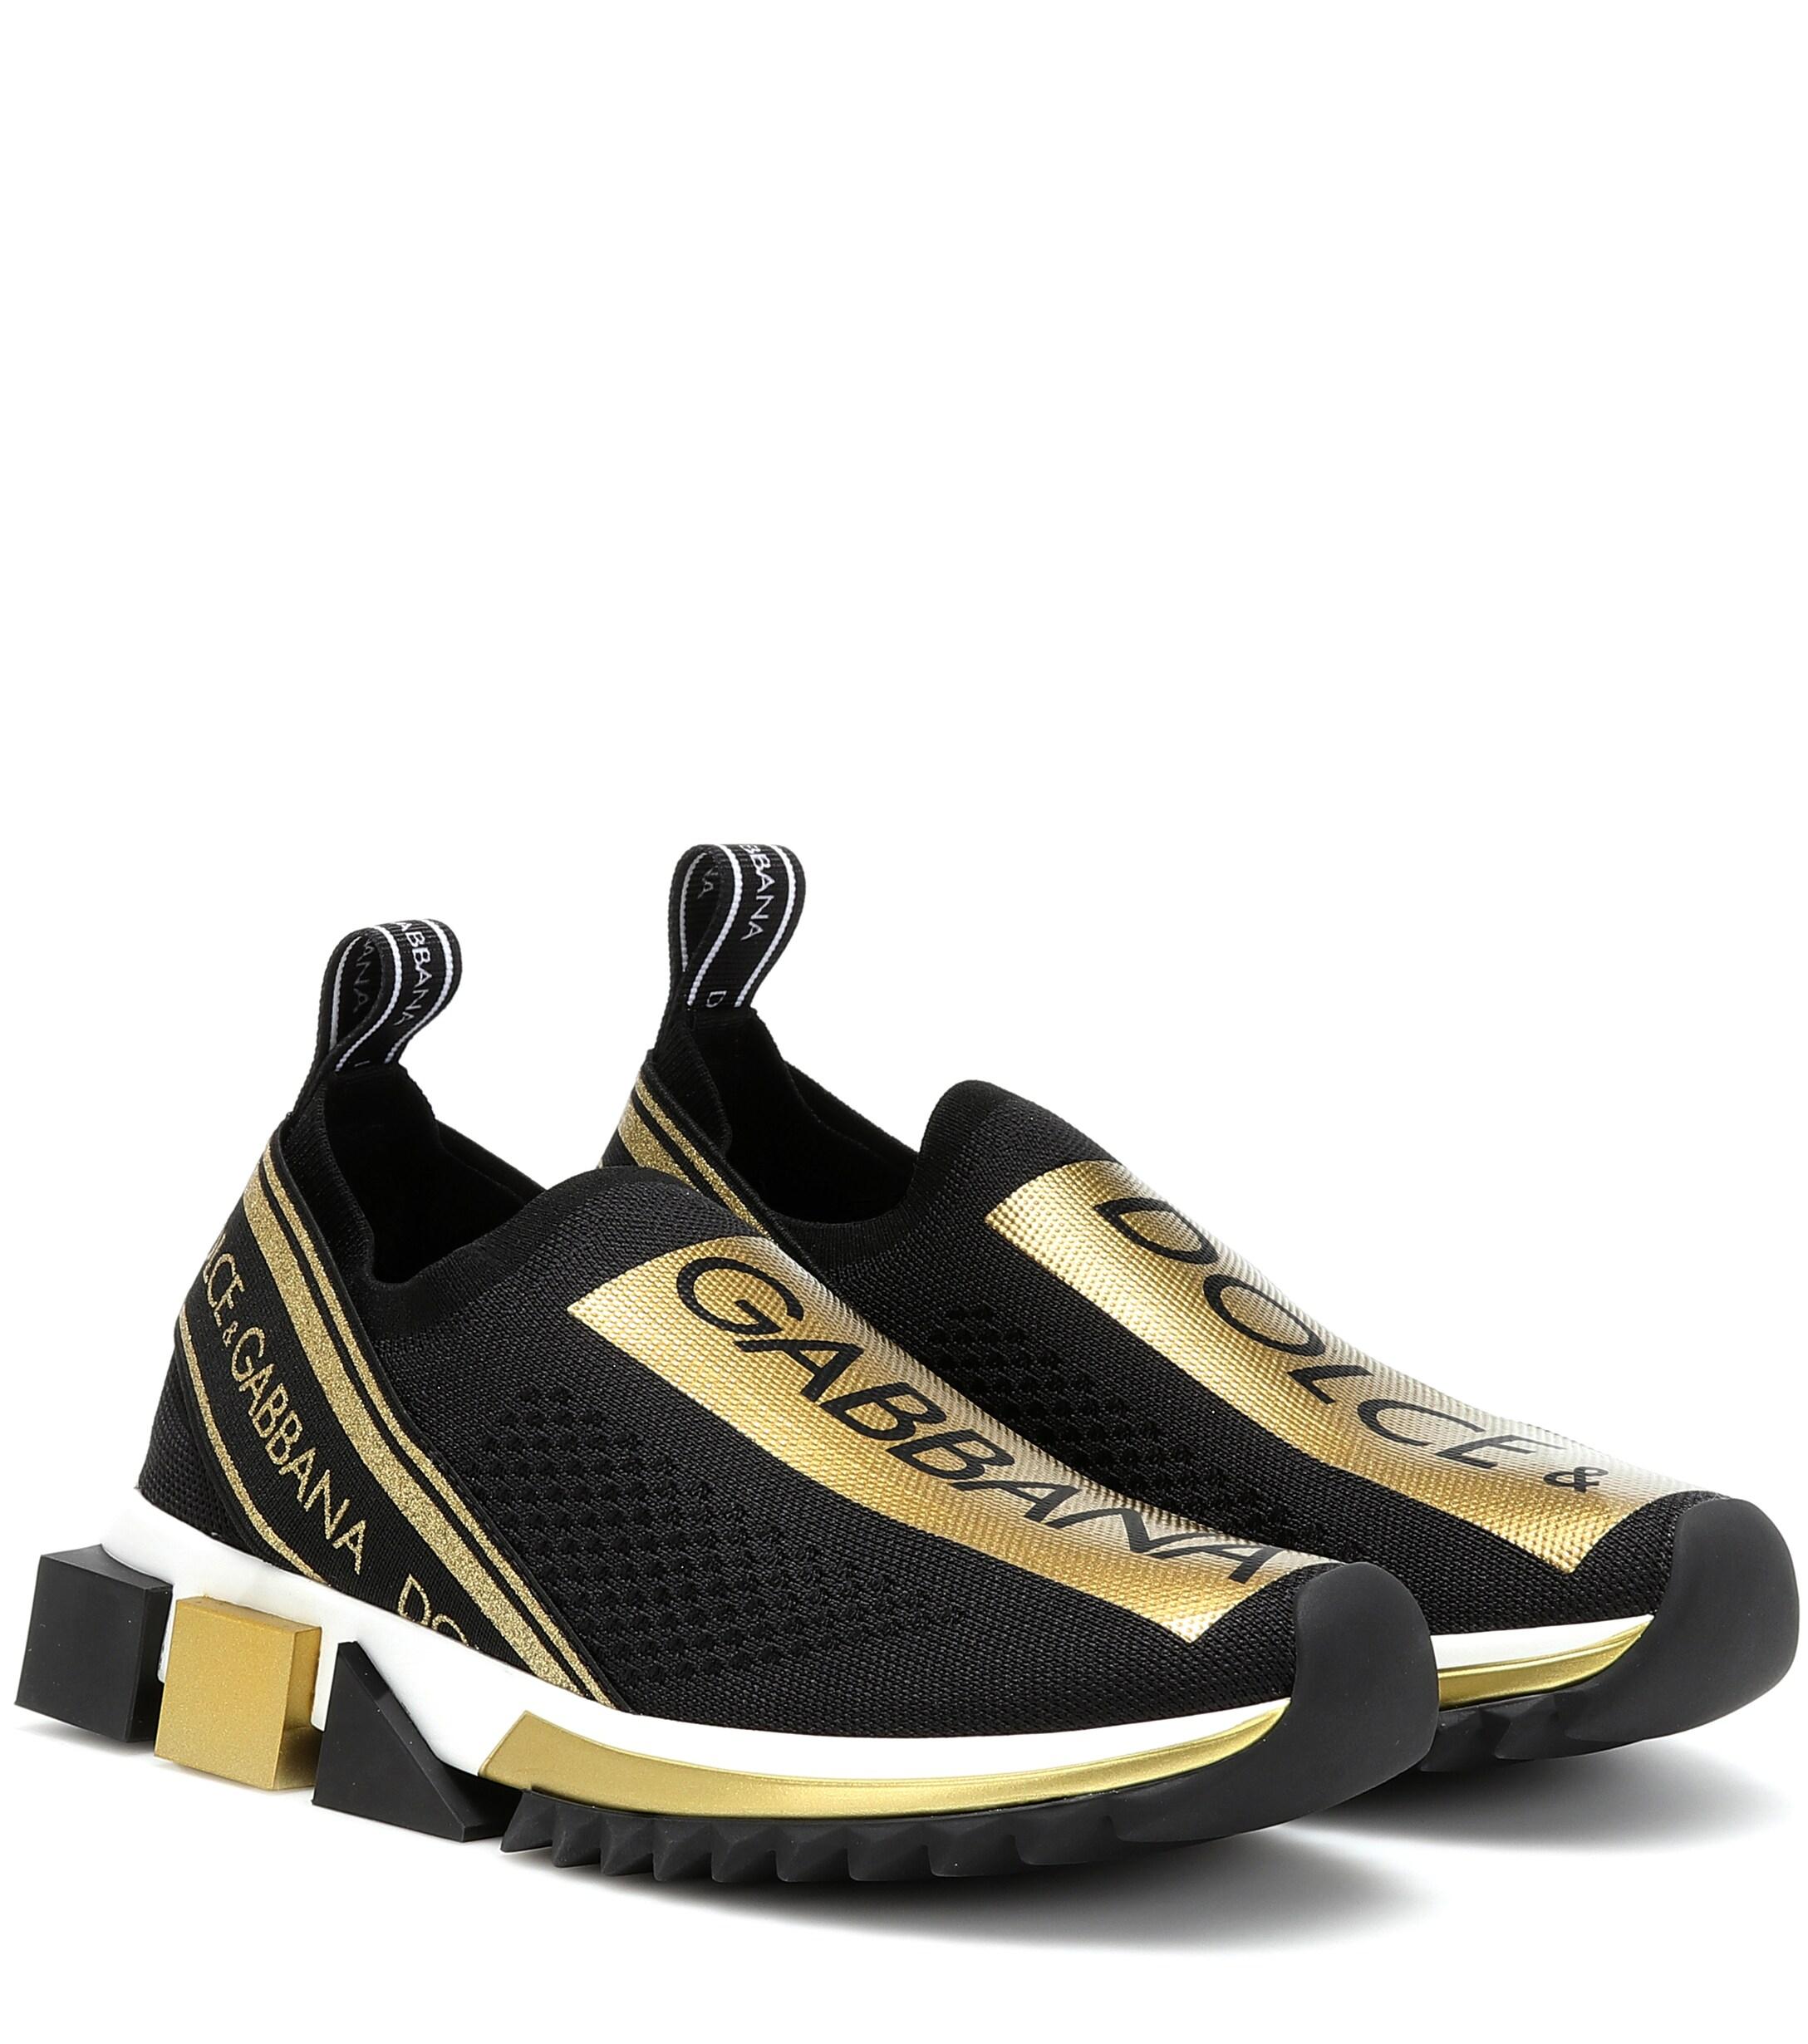 Dolce & Gabbana Sorrento Sneakers in Black/Gold (Black) - Save 54% - Lyst